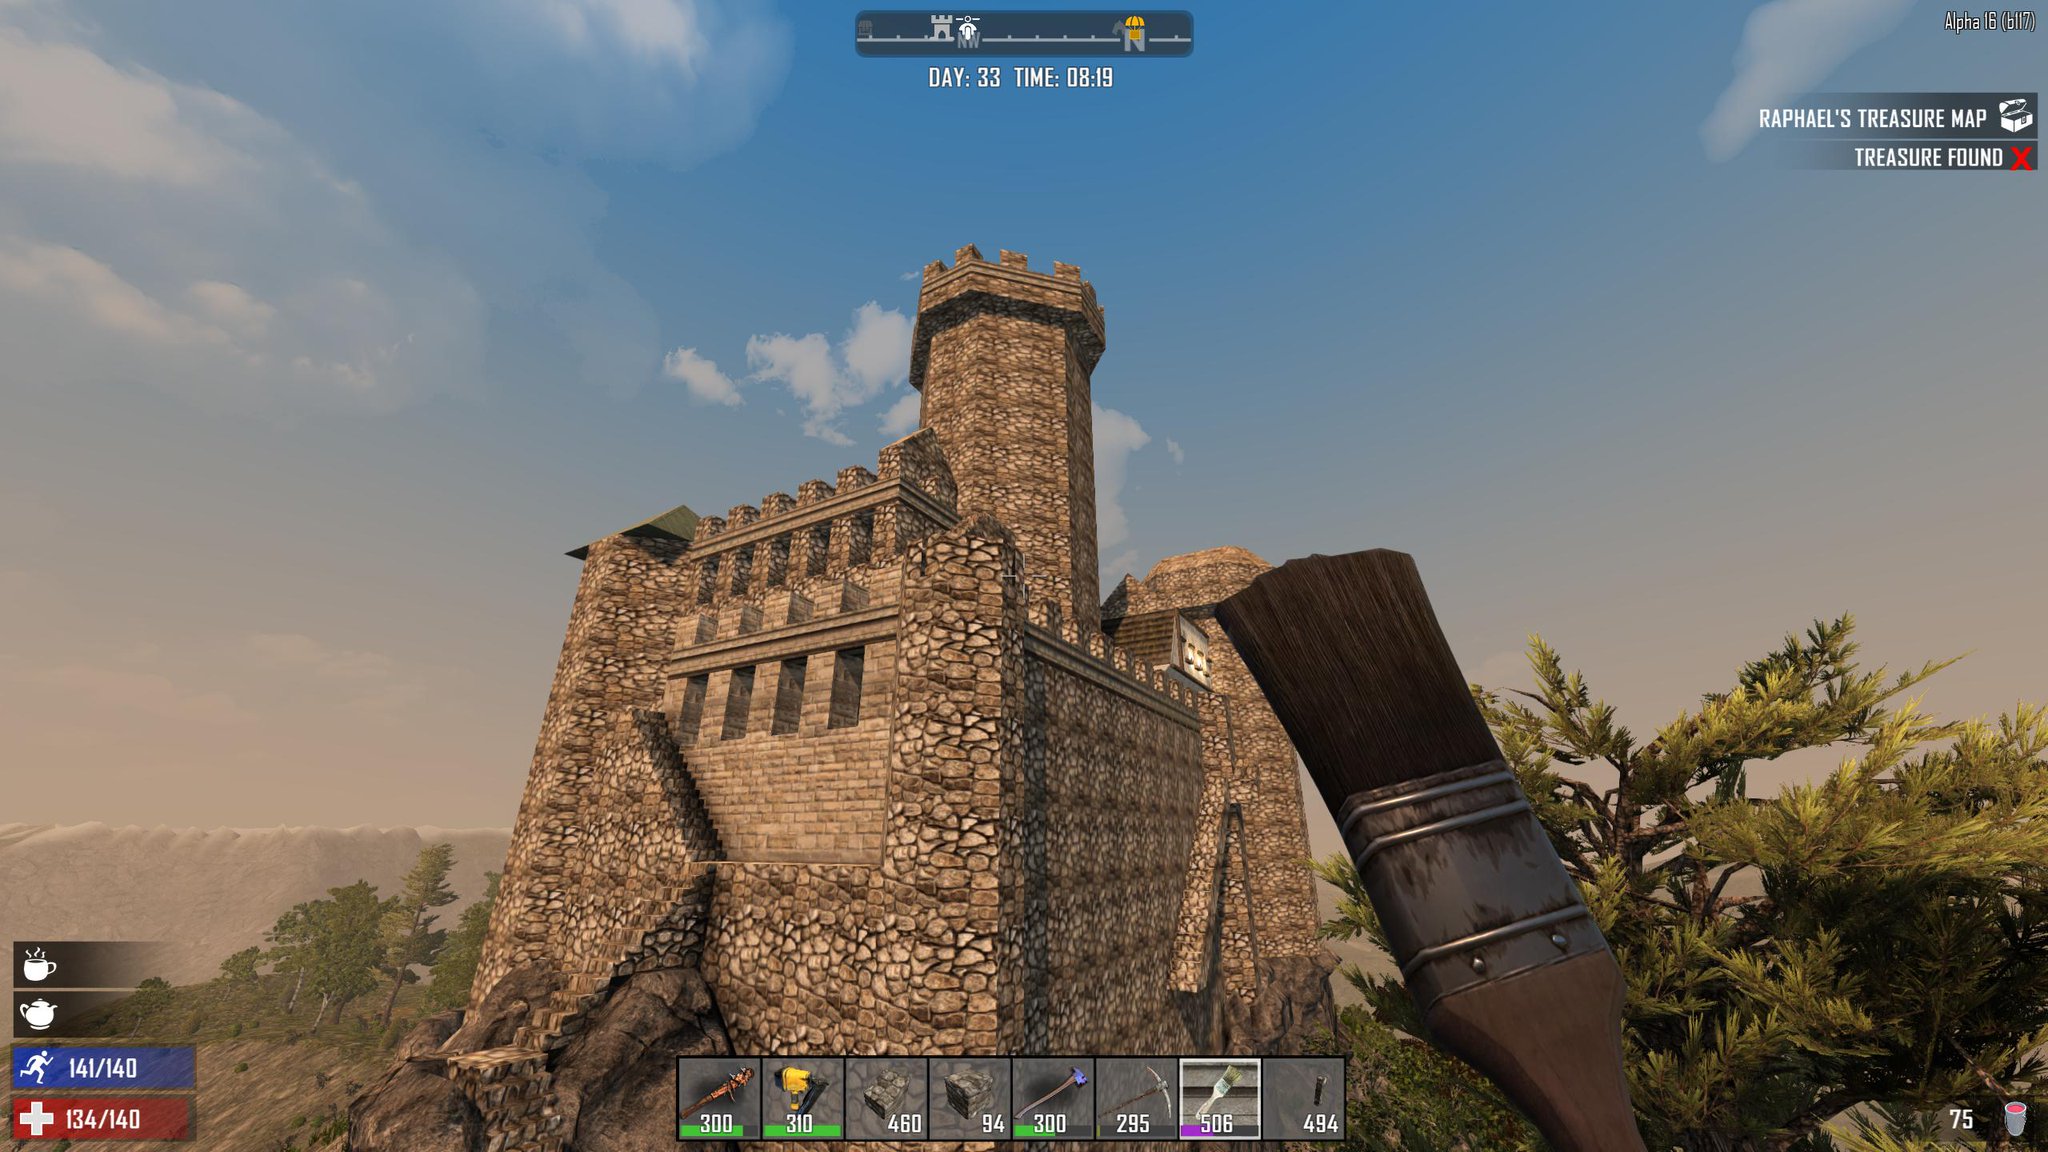 Development on Twitter: "I'm making progress on my castle! Having a